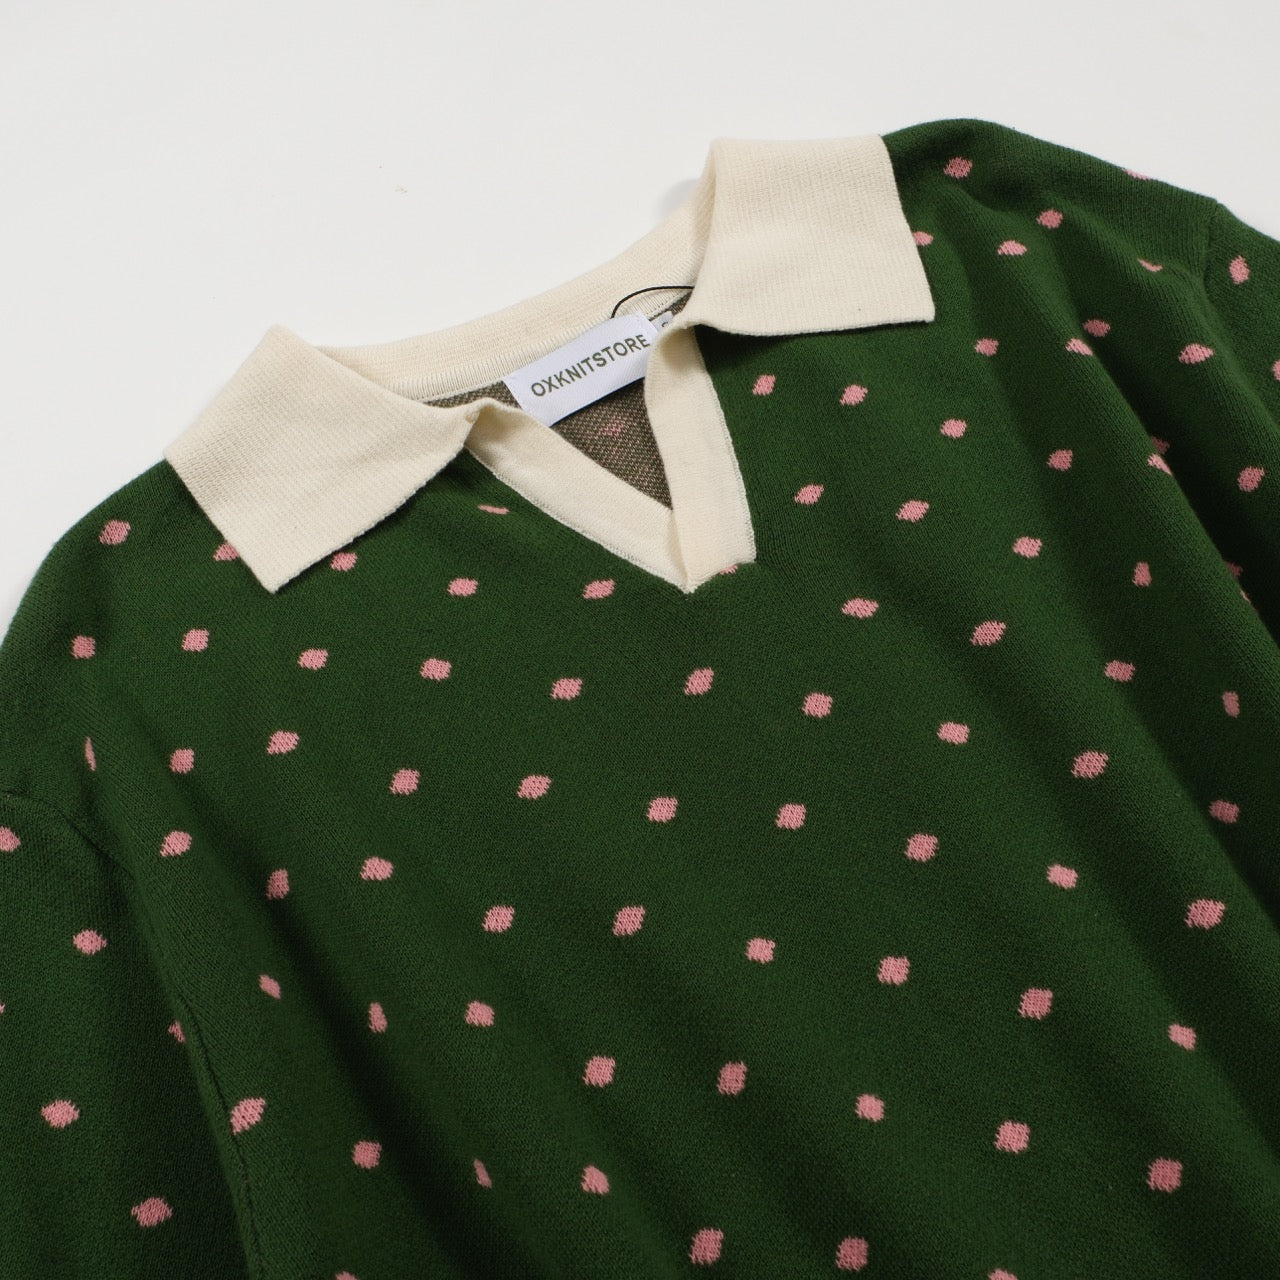 Men's green polka-dot knitted short-sleeved v-neck polo shirt